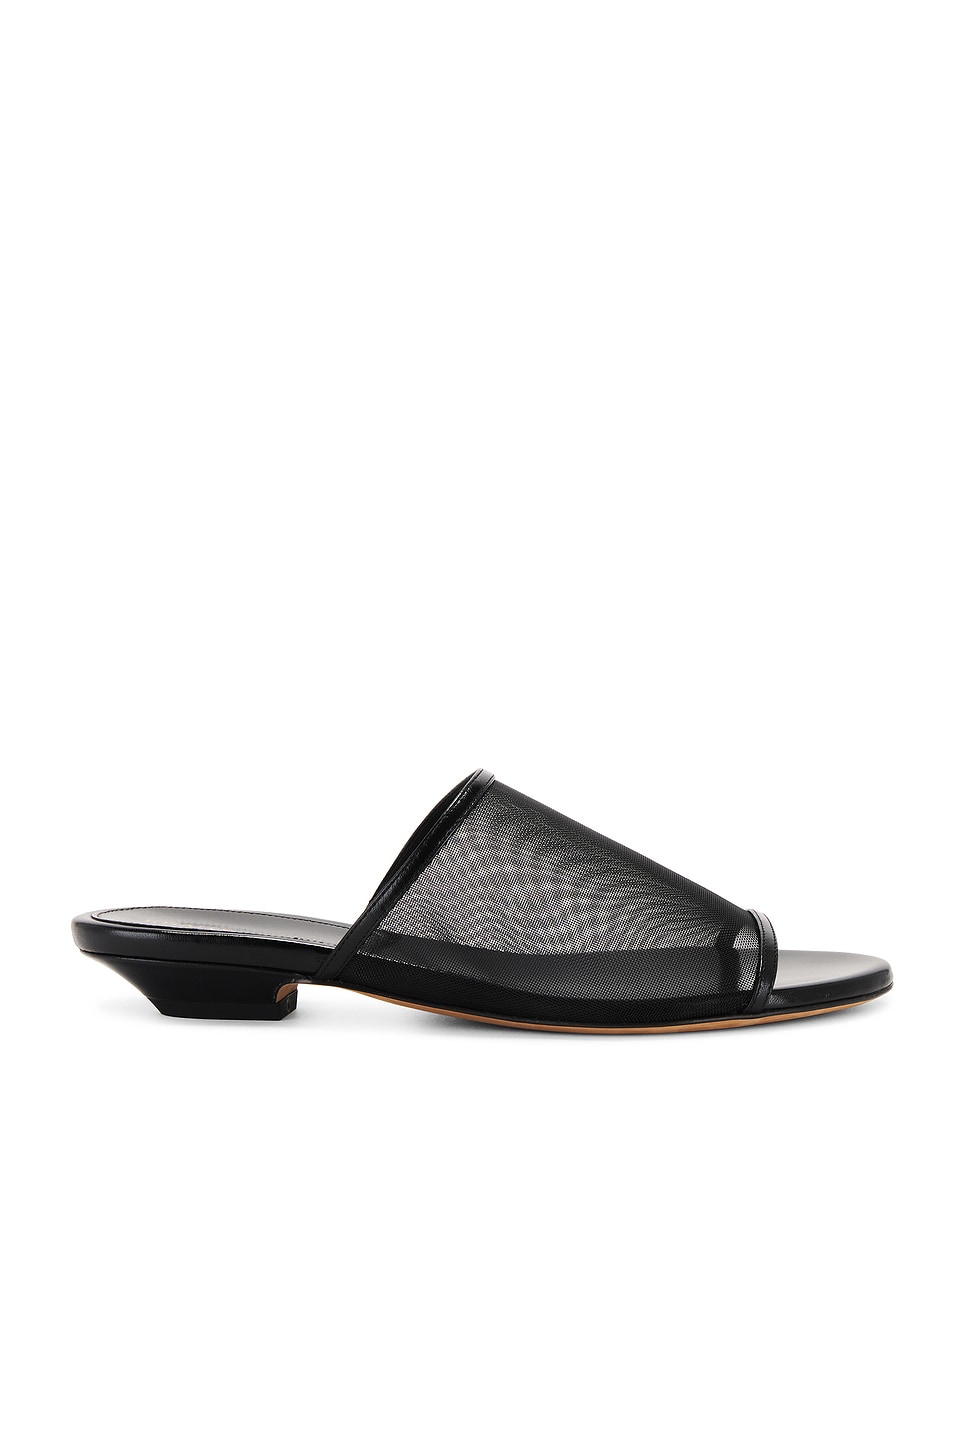 Image 1 of KHAITE Marion Slide Flat Sandal in Black